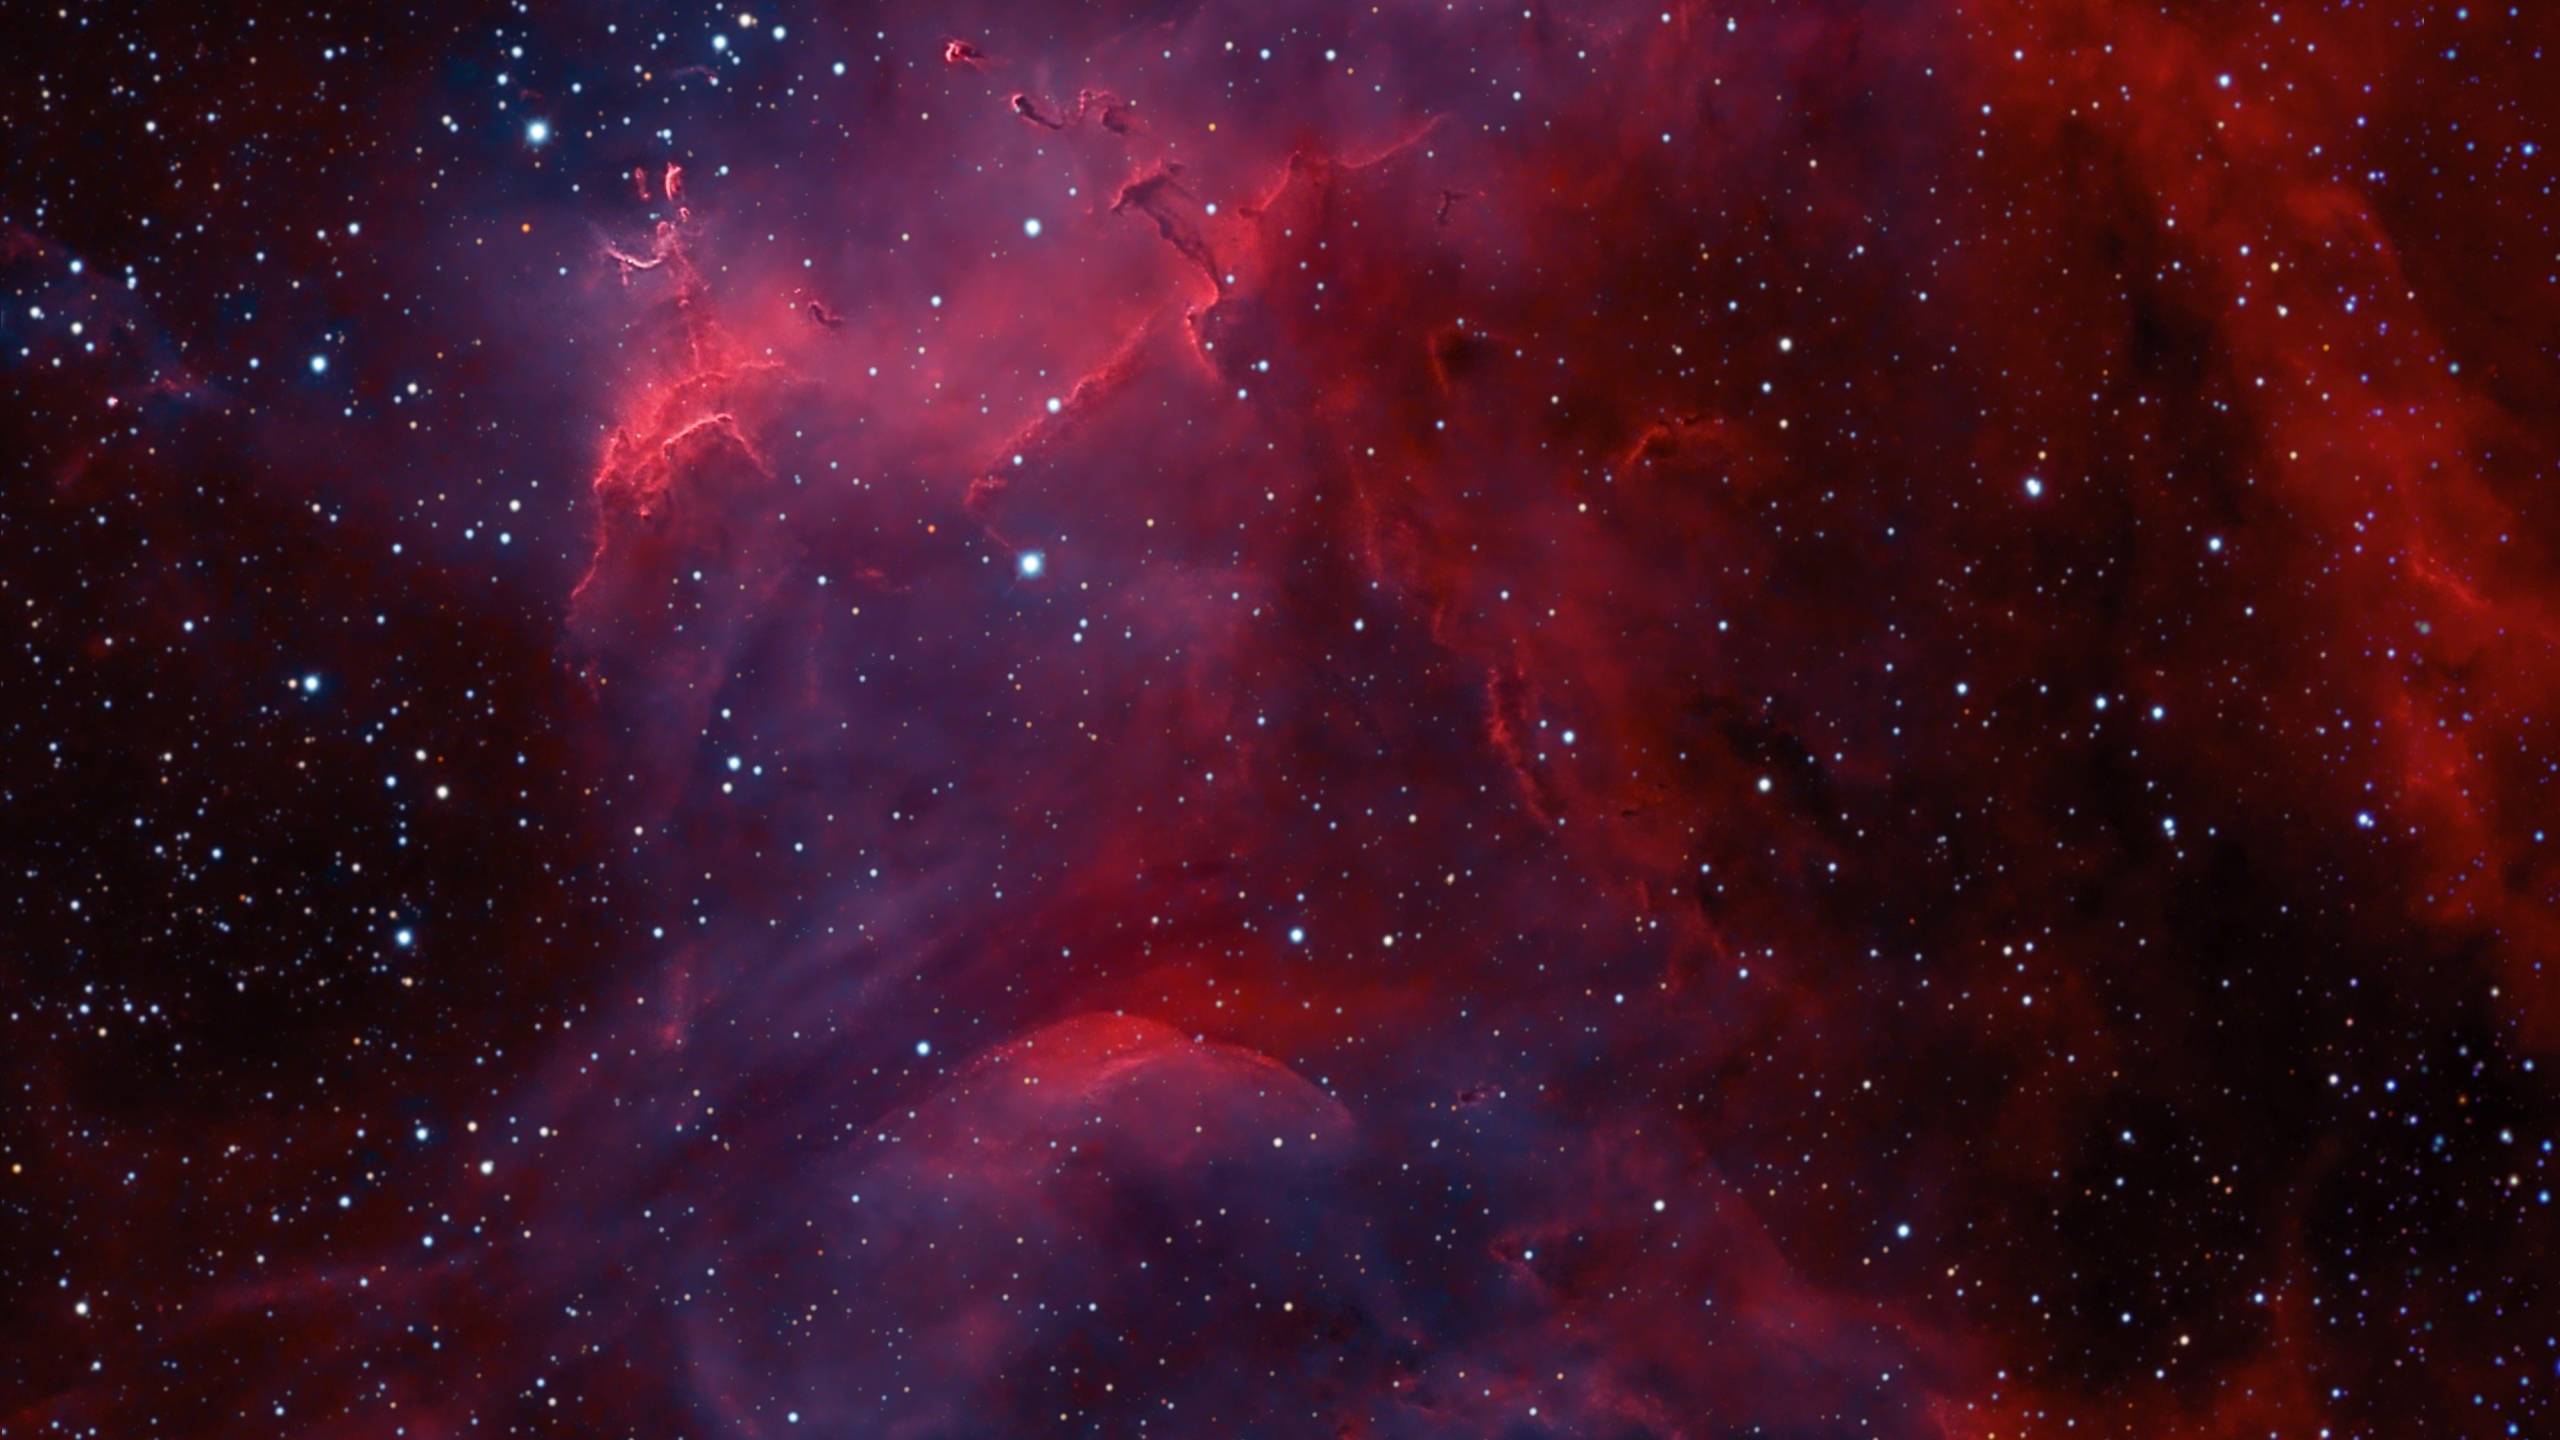 Độ phân giải 2560X1440 cùng với màu sắc đỏ đầy cuốn hút sẽ mang đến cho bạn một chiếc hình nền vũ trụ đến từ những tinh tú trong vô vàn vũ trụ. Hãy cùng chiêm ngưỡng những ngôi sao cuốn hút bên nền đen tối và cảm nhận vẻ đẹp say mê của vũ trụ.